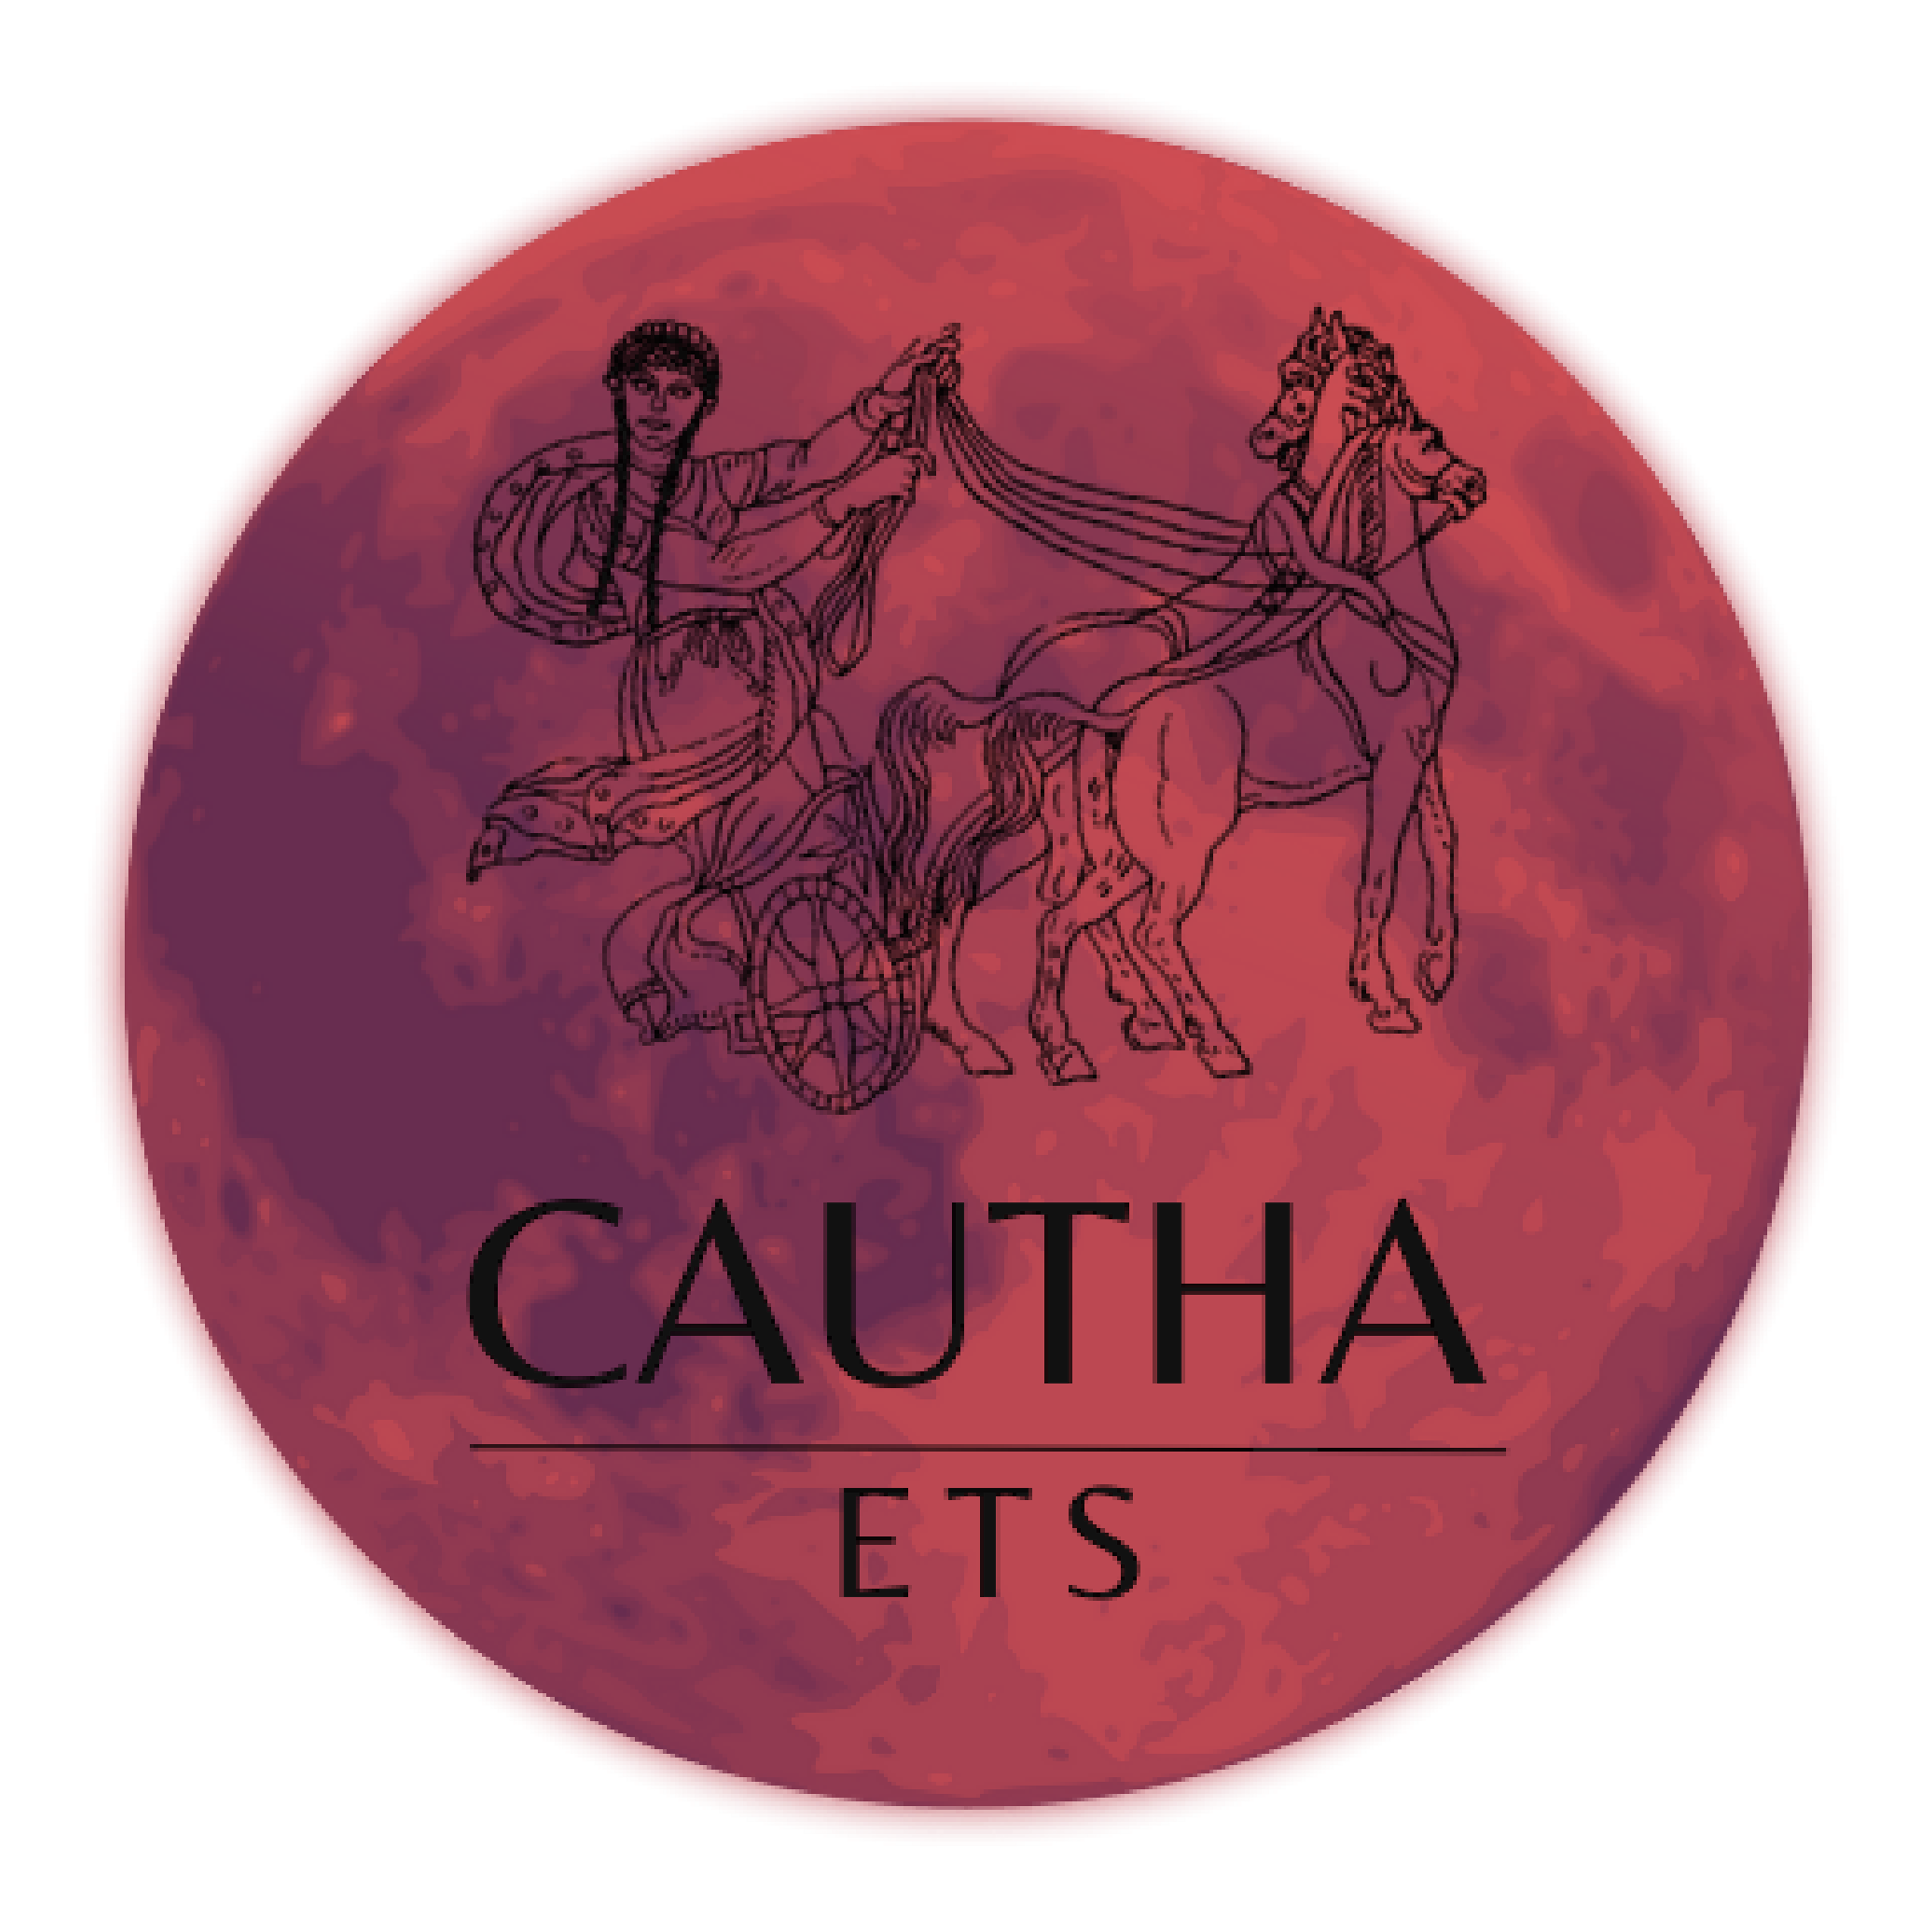 Cautha